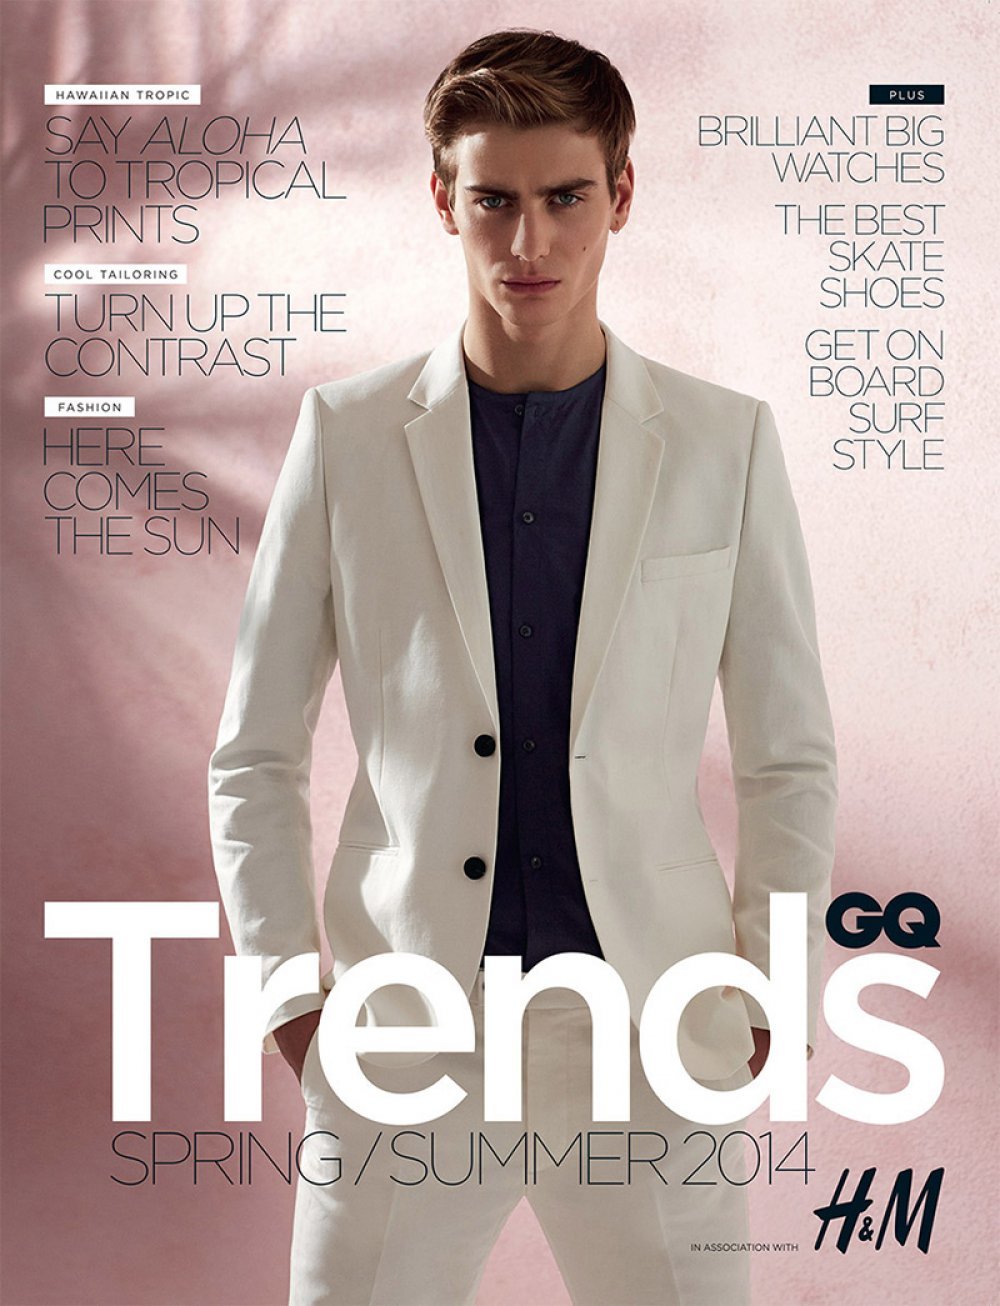 Ben Allen Diện Thời Trang H&M Trên Tạp Chí GQ Trends Supplement Anh Xuân/Hè 2014